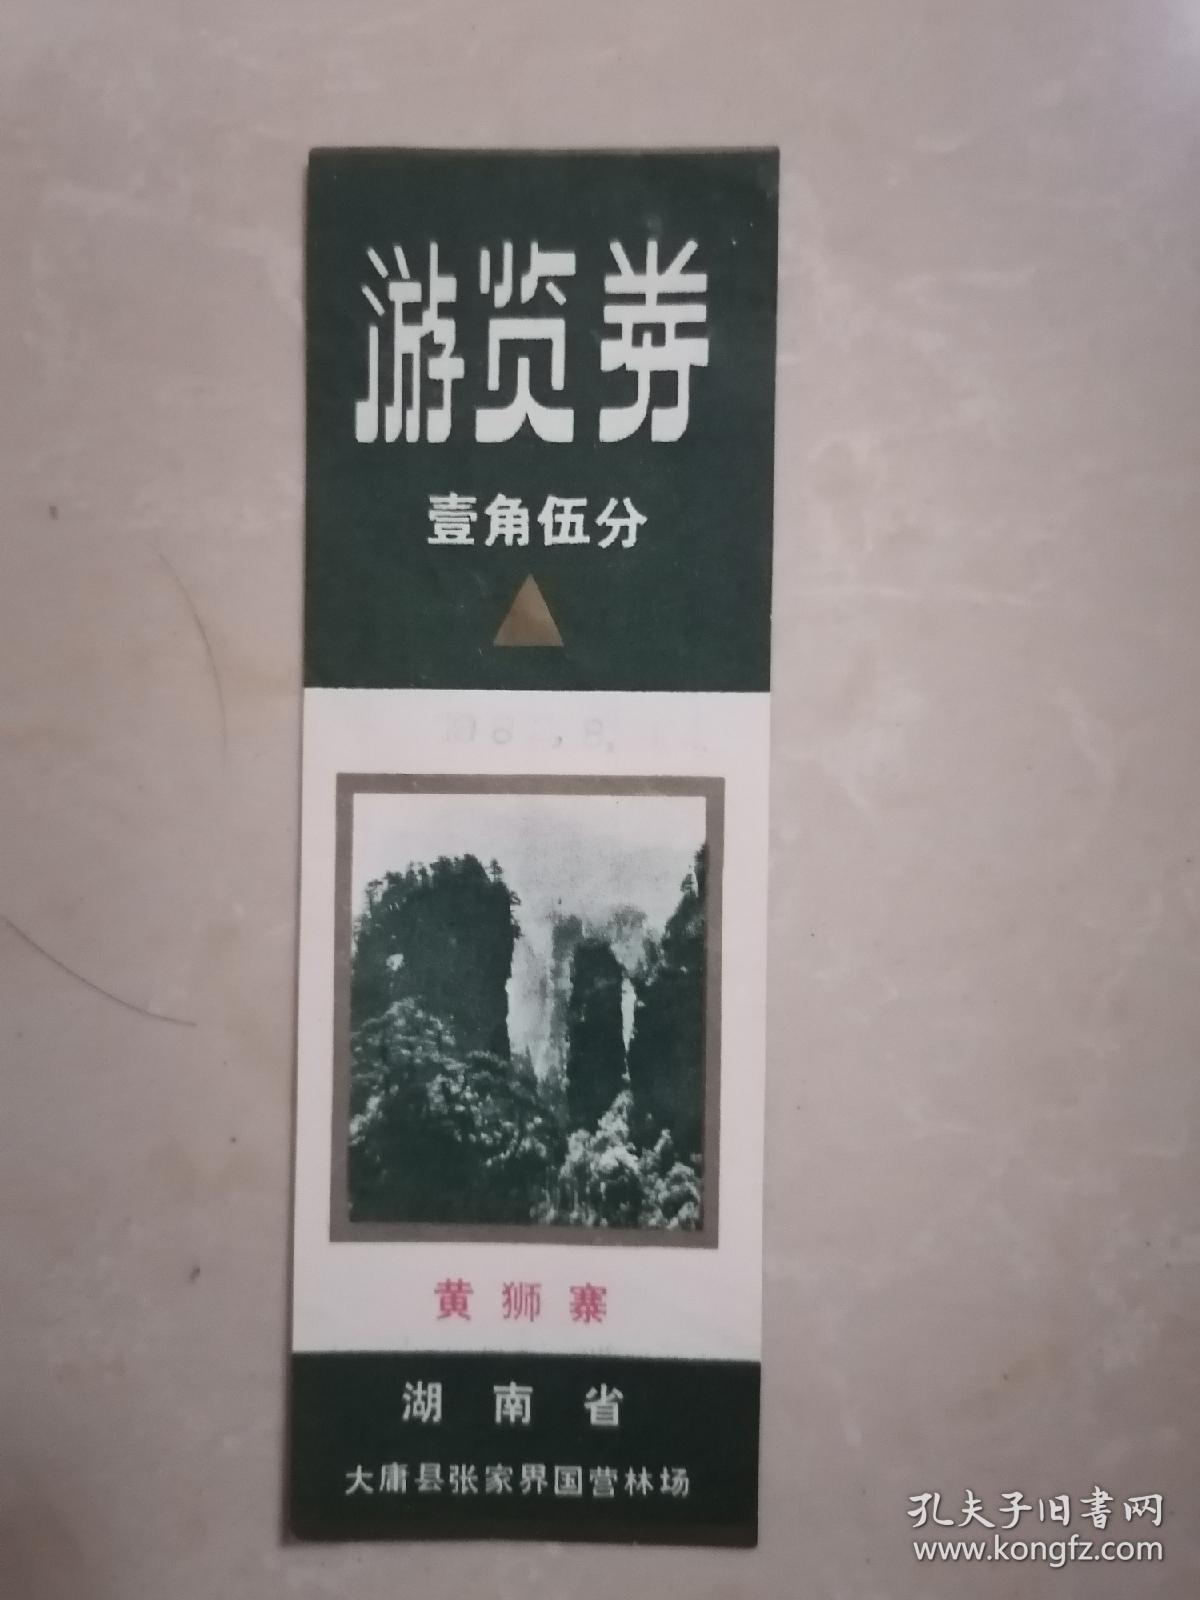 1982年大庸县张家界国营林场黄狮寨游览券